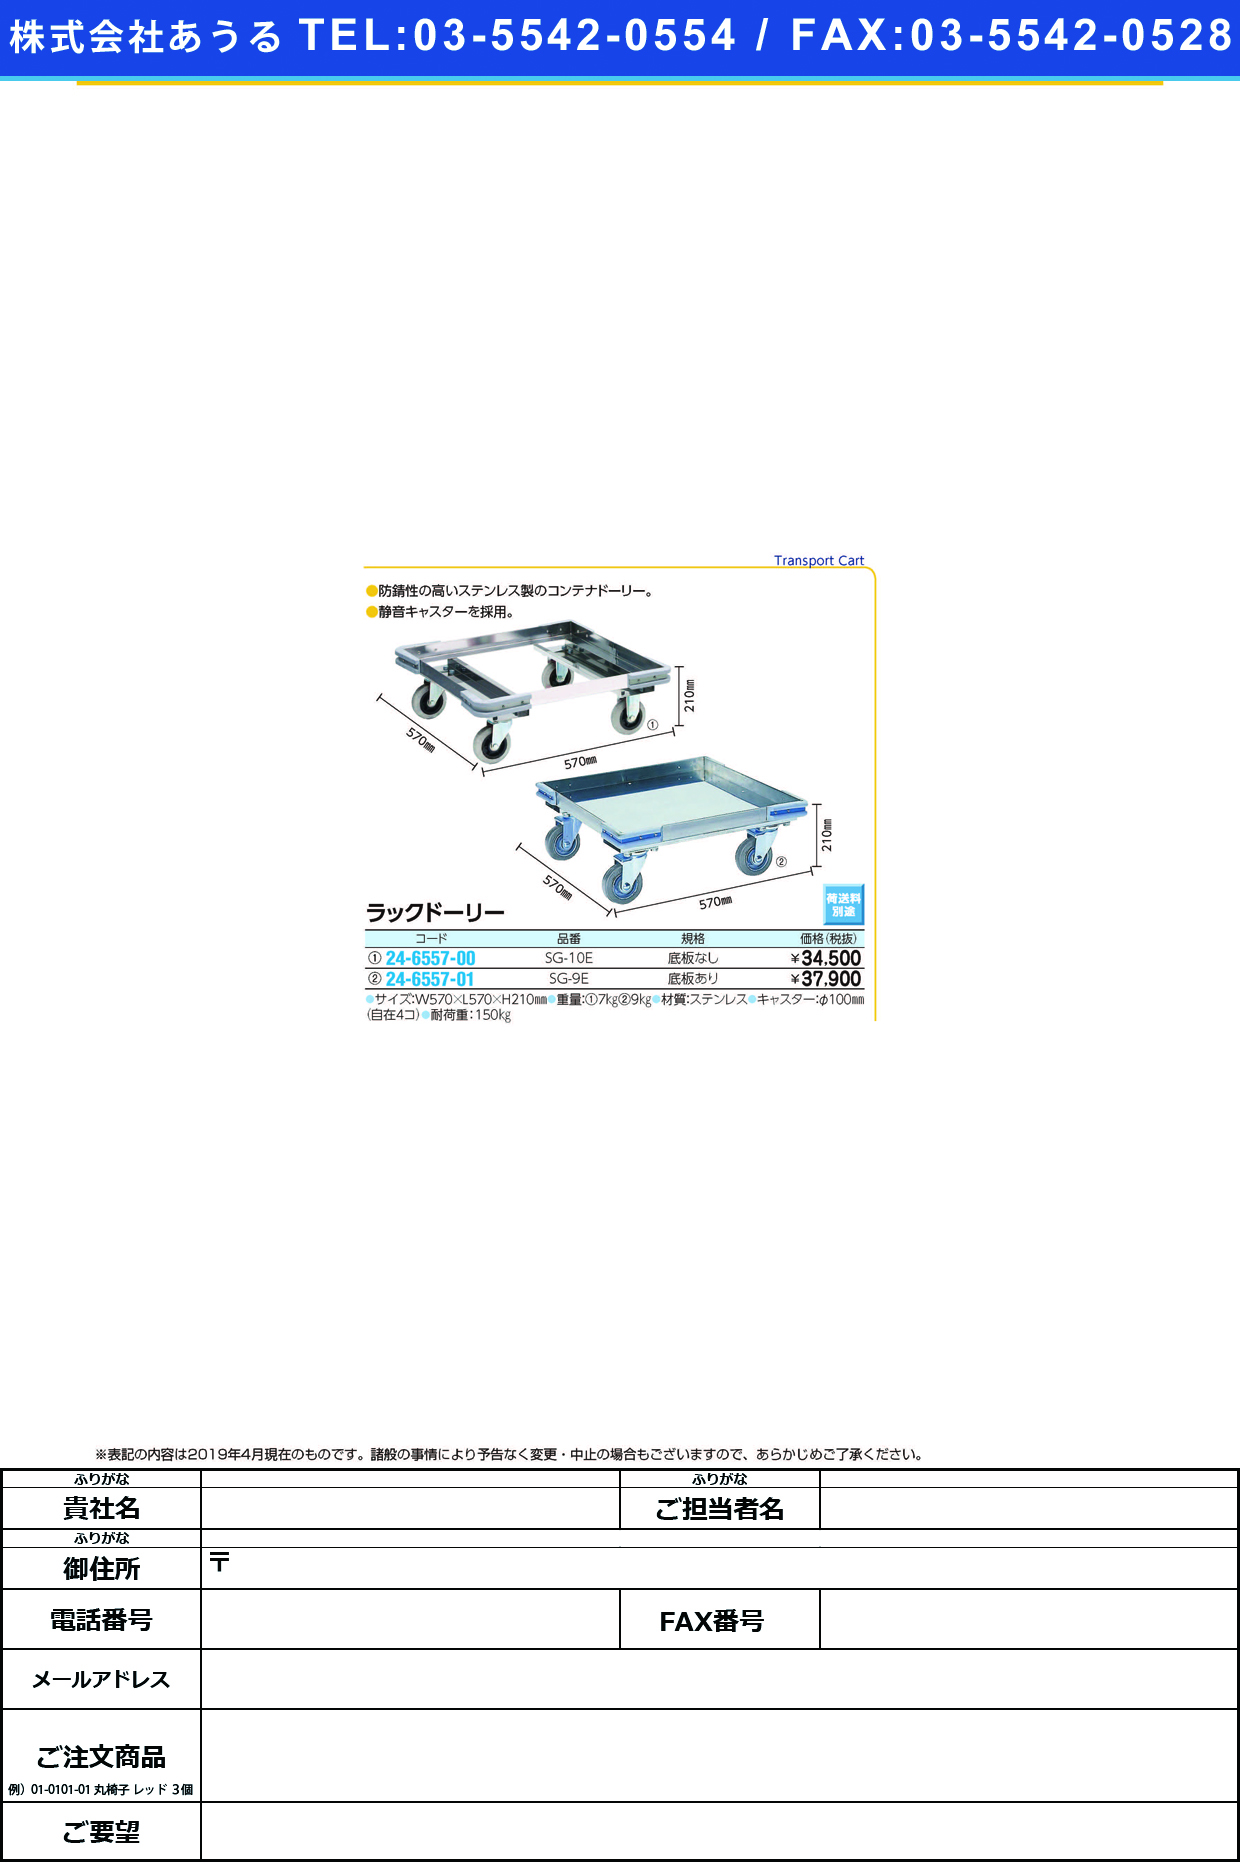 (24-6557-01)ラックドーリー（底板あり） SG-9E ﾗｯｸﾄﾞｰﾘｰ(ｿｺｲﾀｱﾘ)(金沢車輛)【1台単位】【2019年カタログ商品】